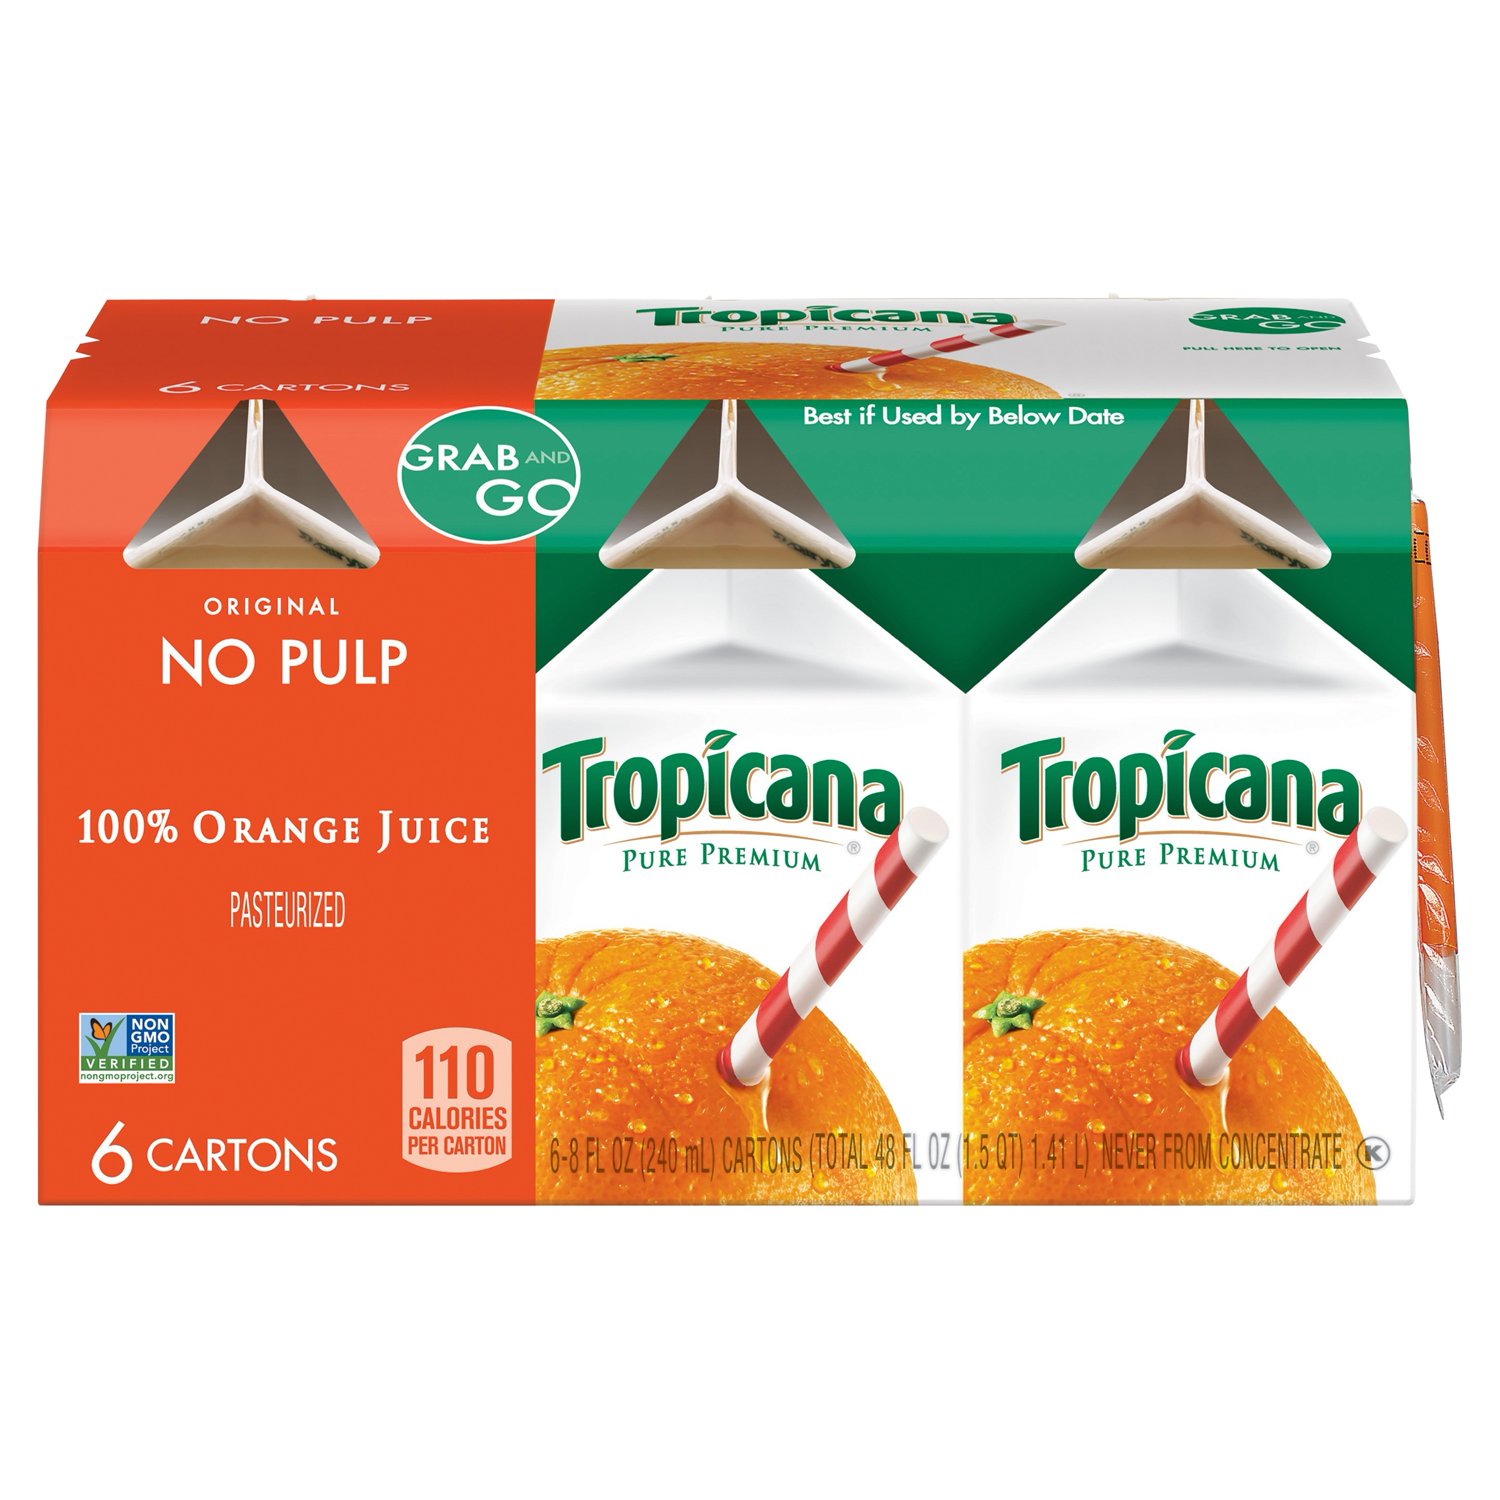 Tropicana Pure Premium, No Pulp 100% Orange Juice, 8 oz, 6 Pack - image 1 of 9